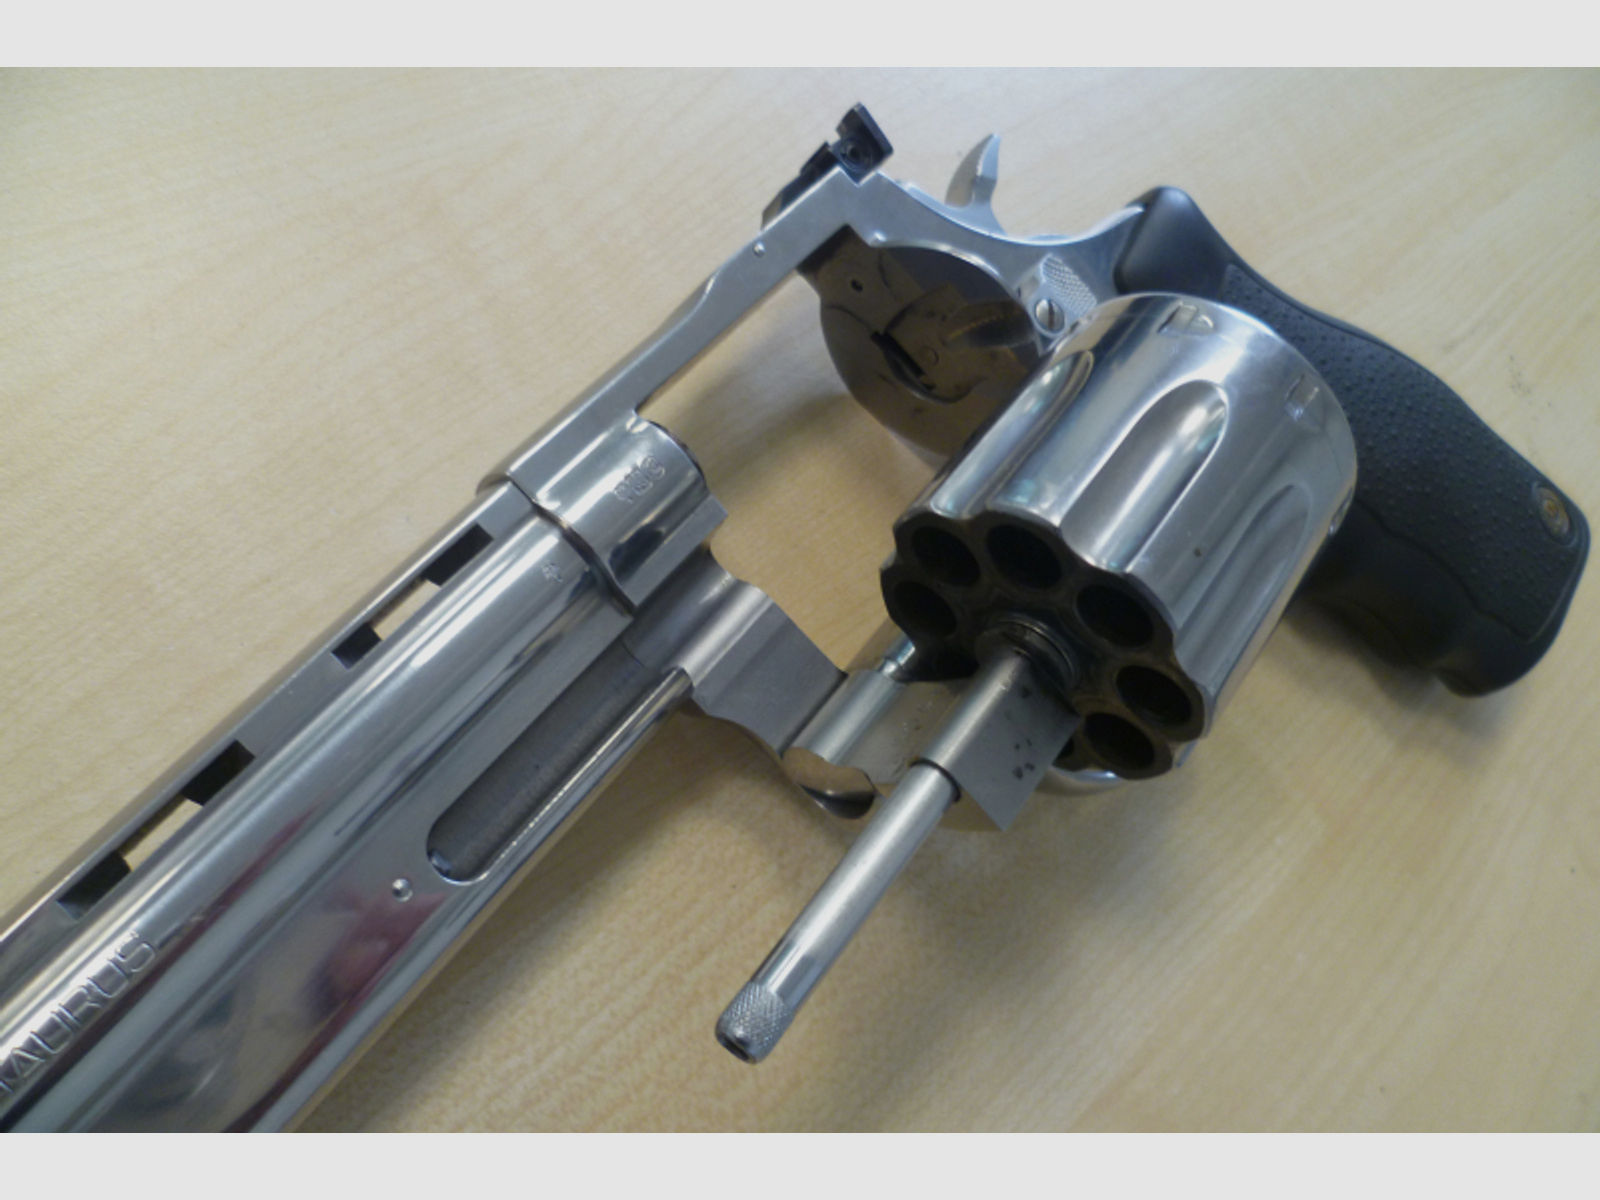 Revolver Taurus Model 608 .357 Magnum